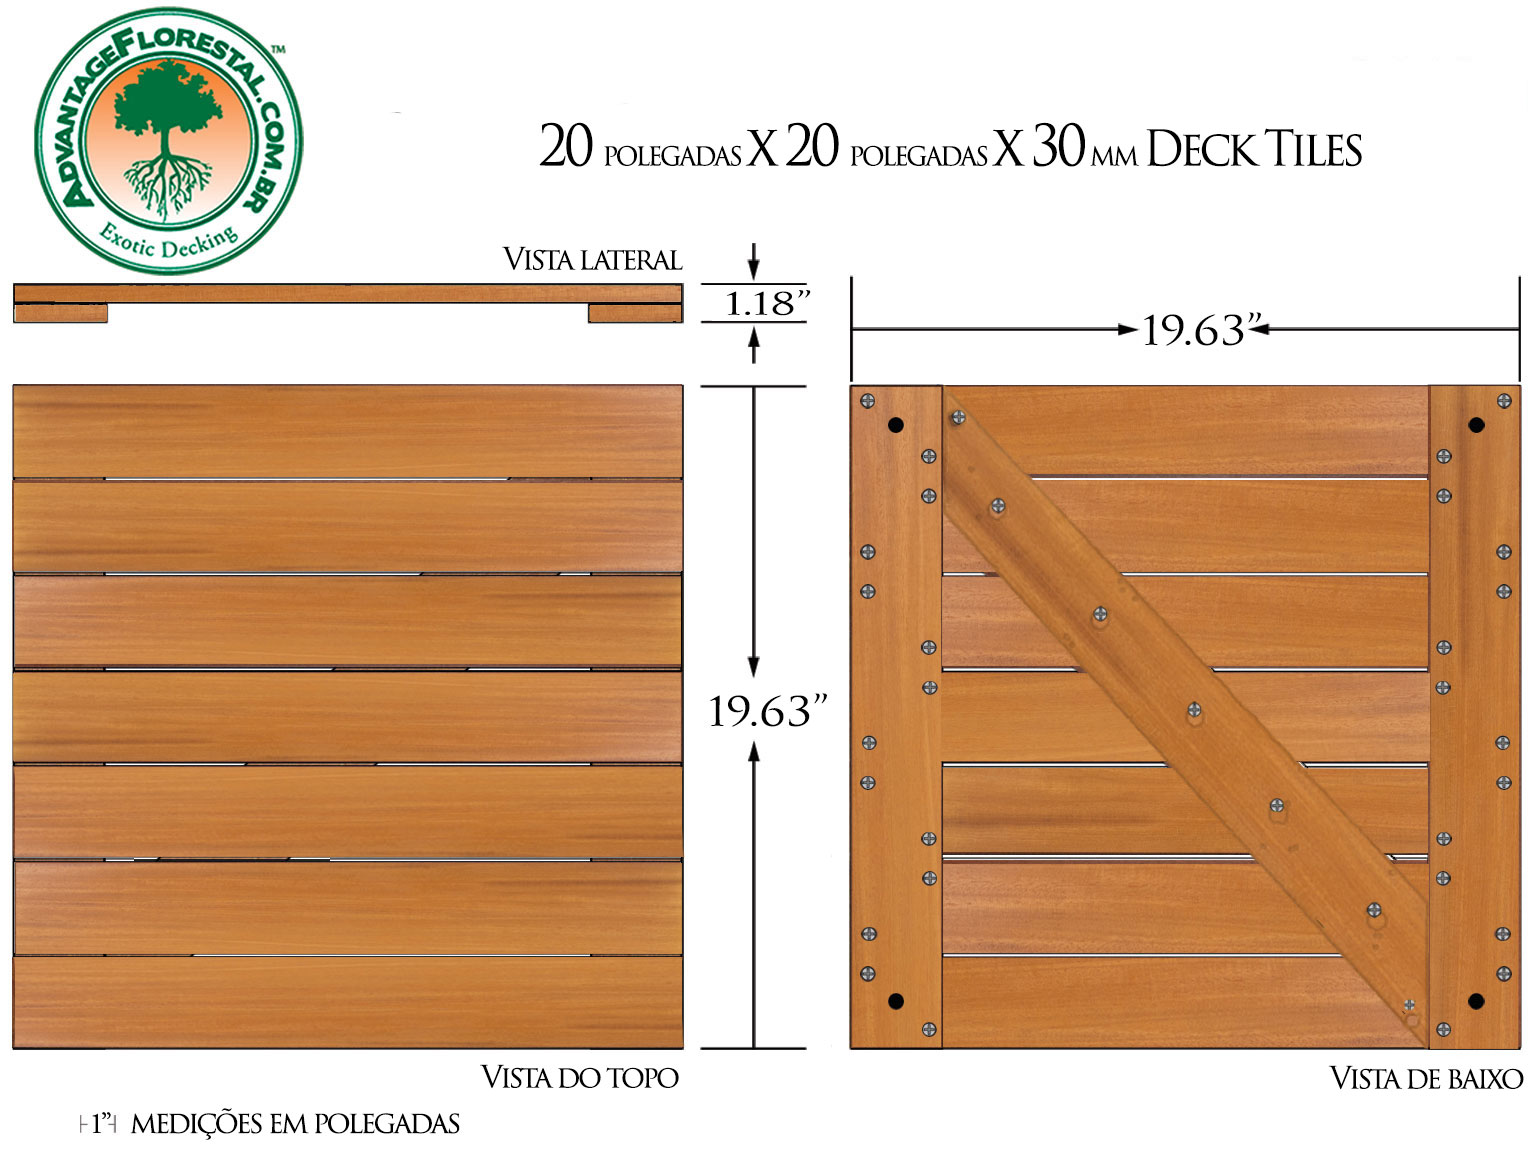 IPE Deck Tile 20 in. x 20 in. x 30mm